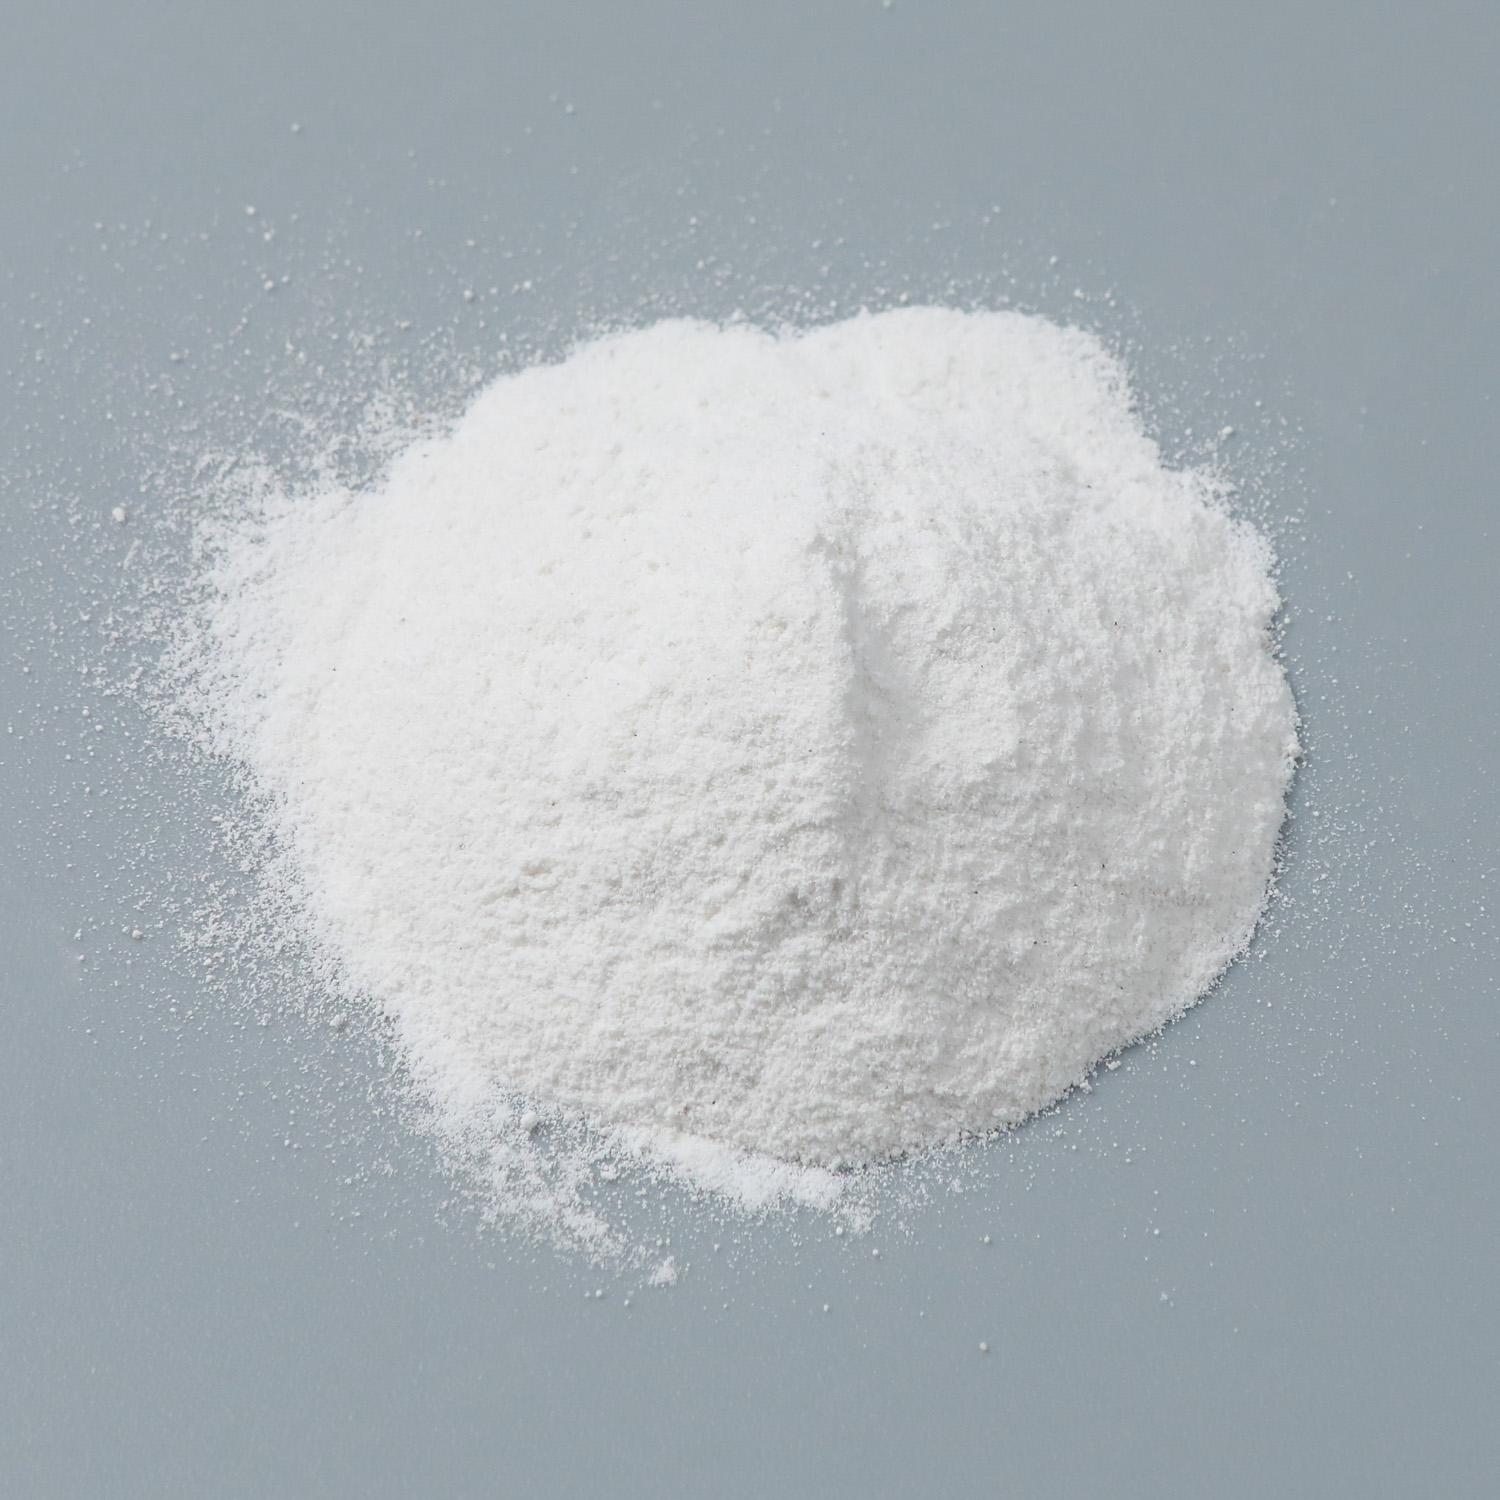 Dicalcium blanco fosfato granular/alimento para polvo DCP CAS No 7789-77-7 para pollos